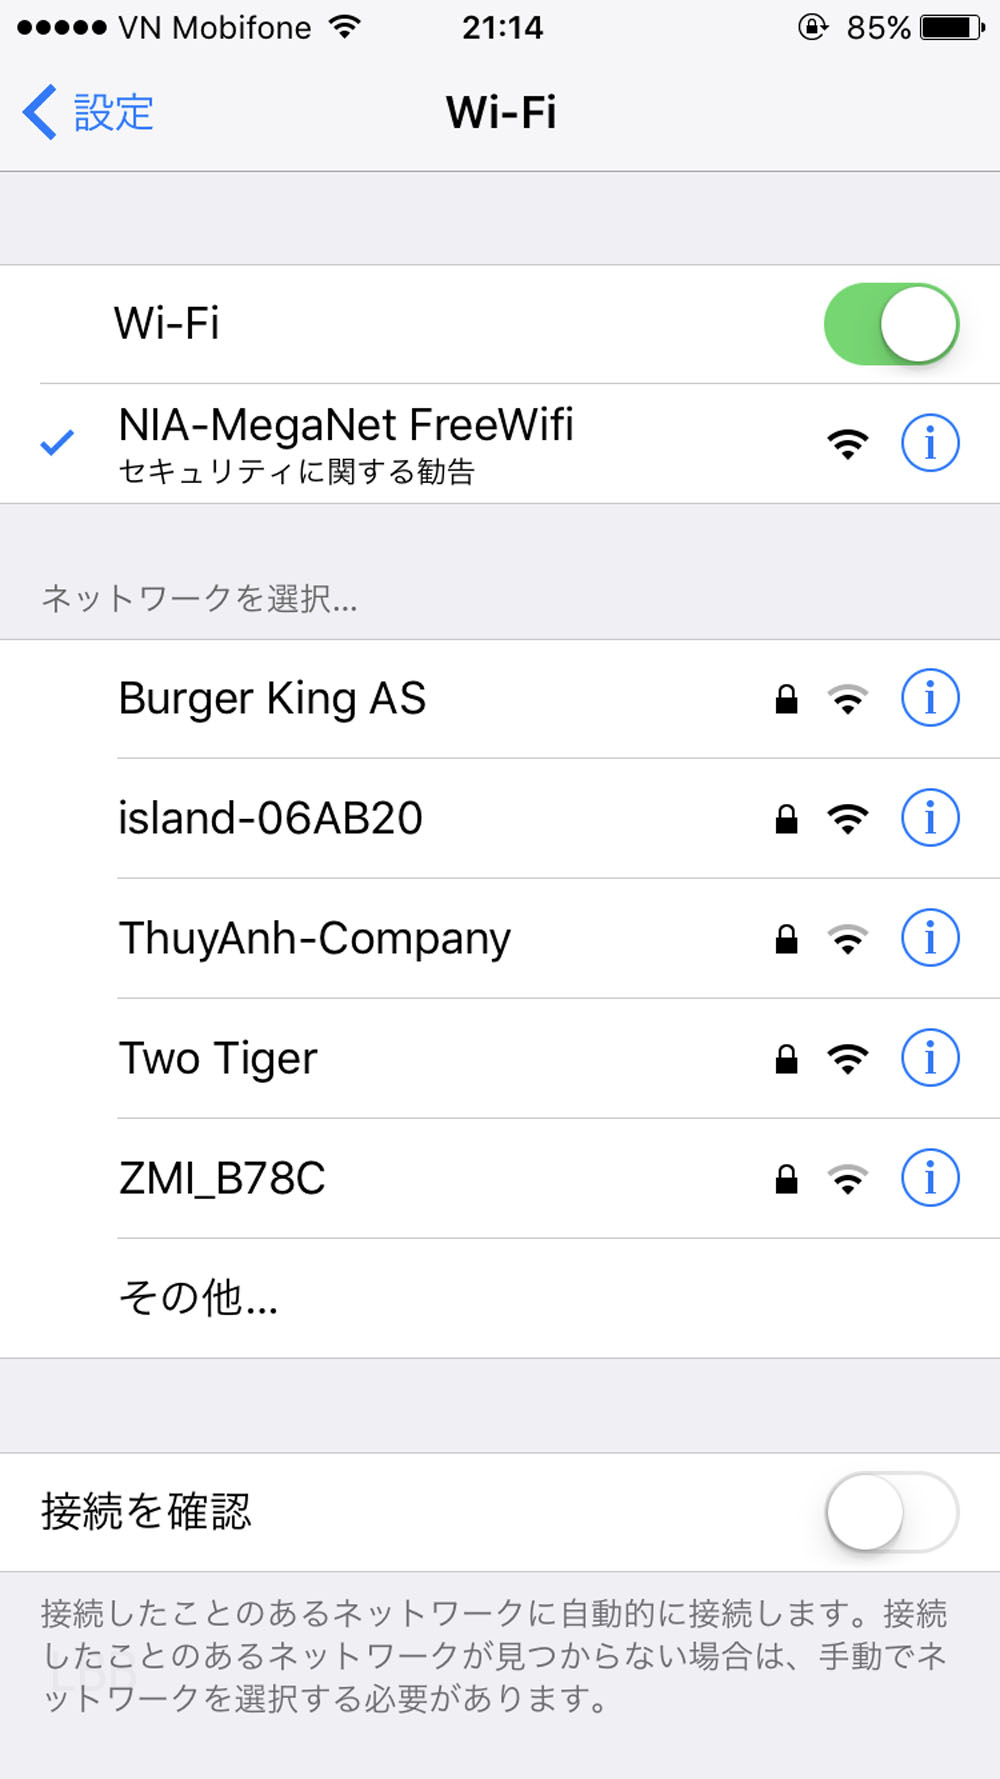 フリーWiFiの接続方法は至って簡単で、NIA-MegaNet FreeWiFiに接続します